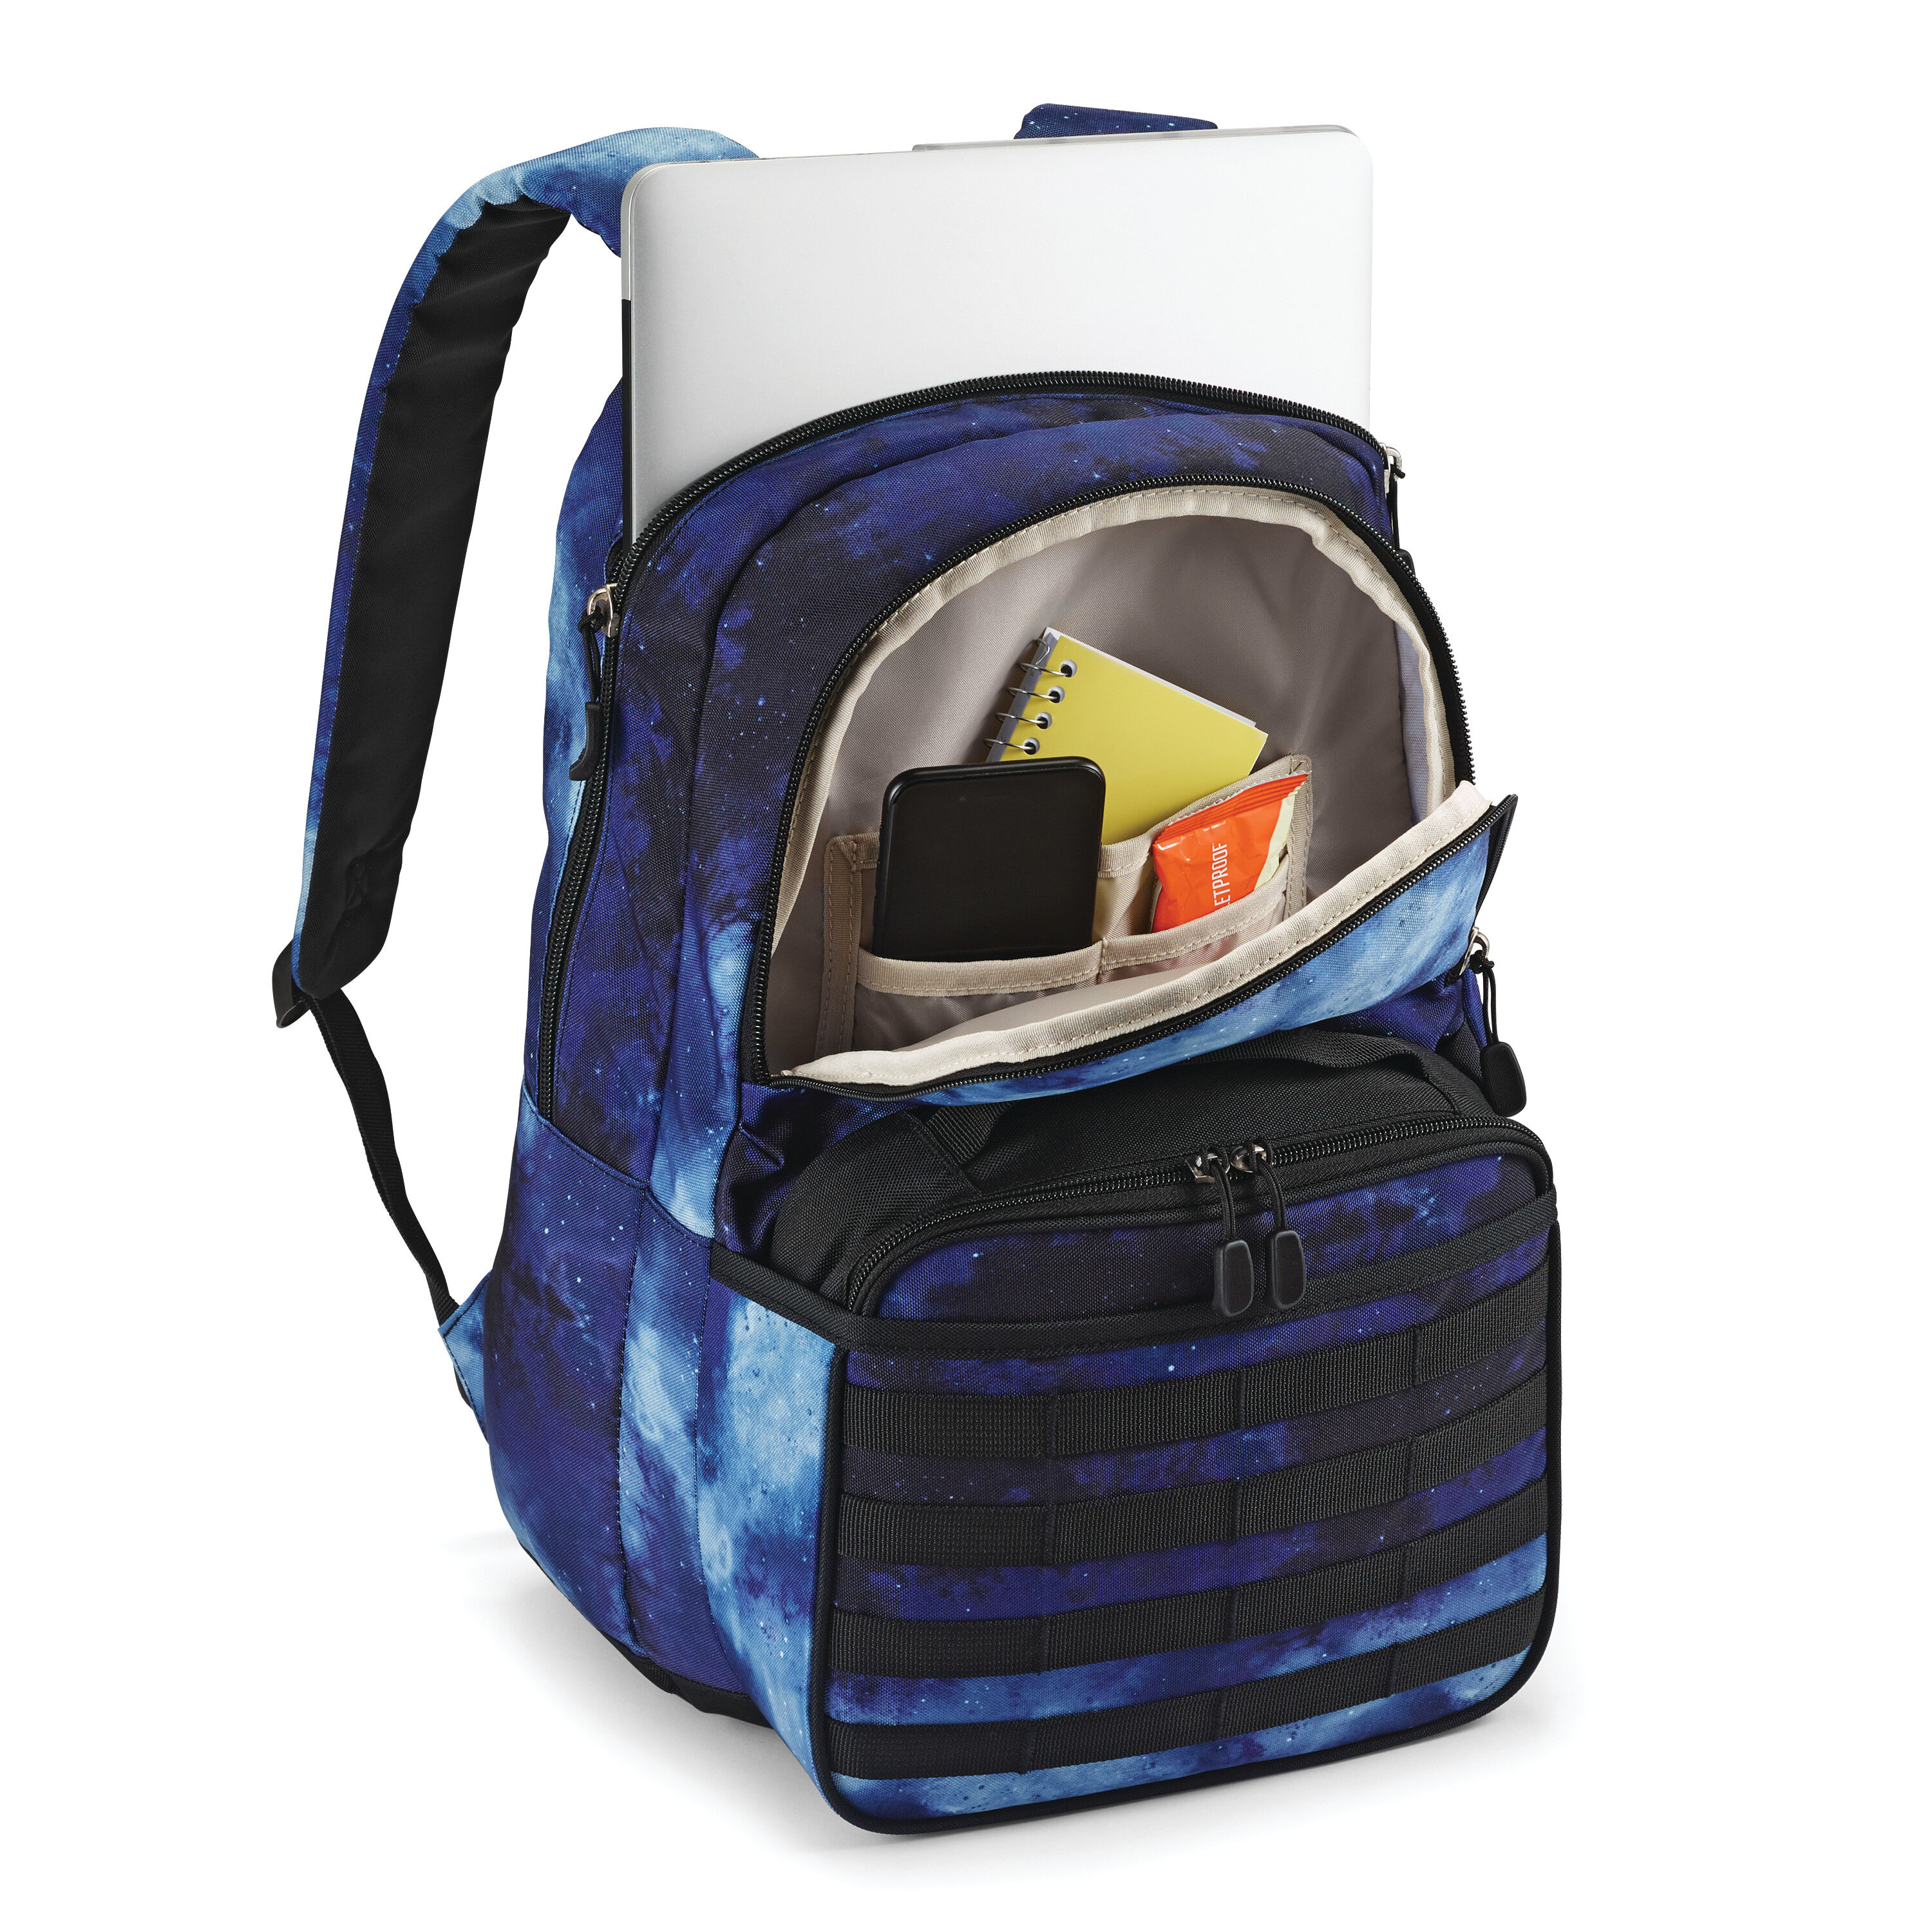 Ergonomic Backpacks Kit for Girls Durable School Bag Set